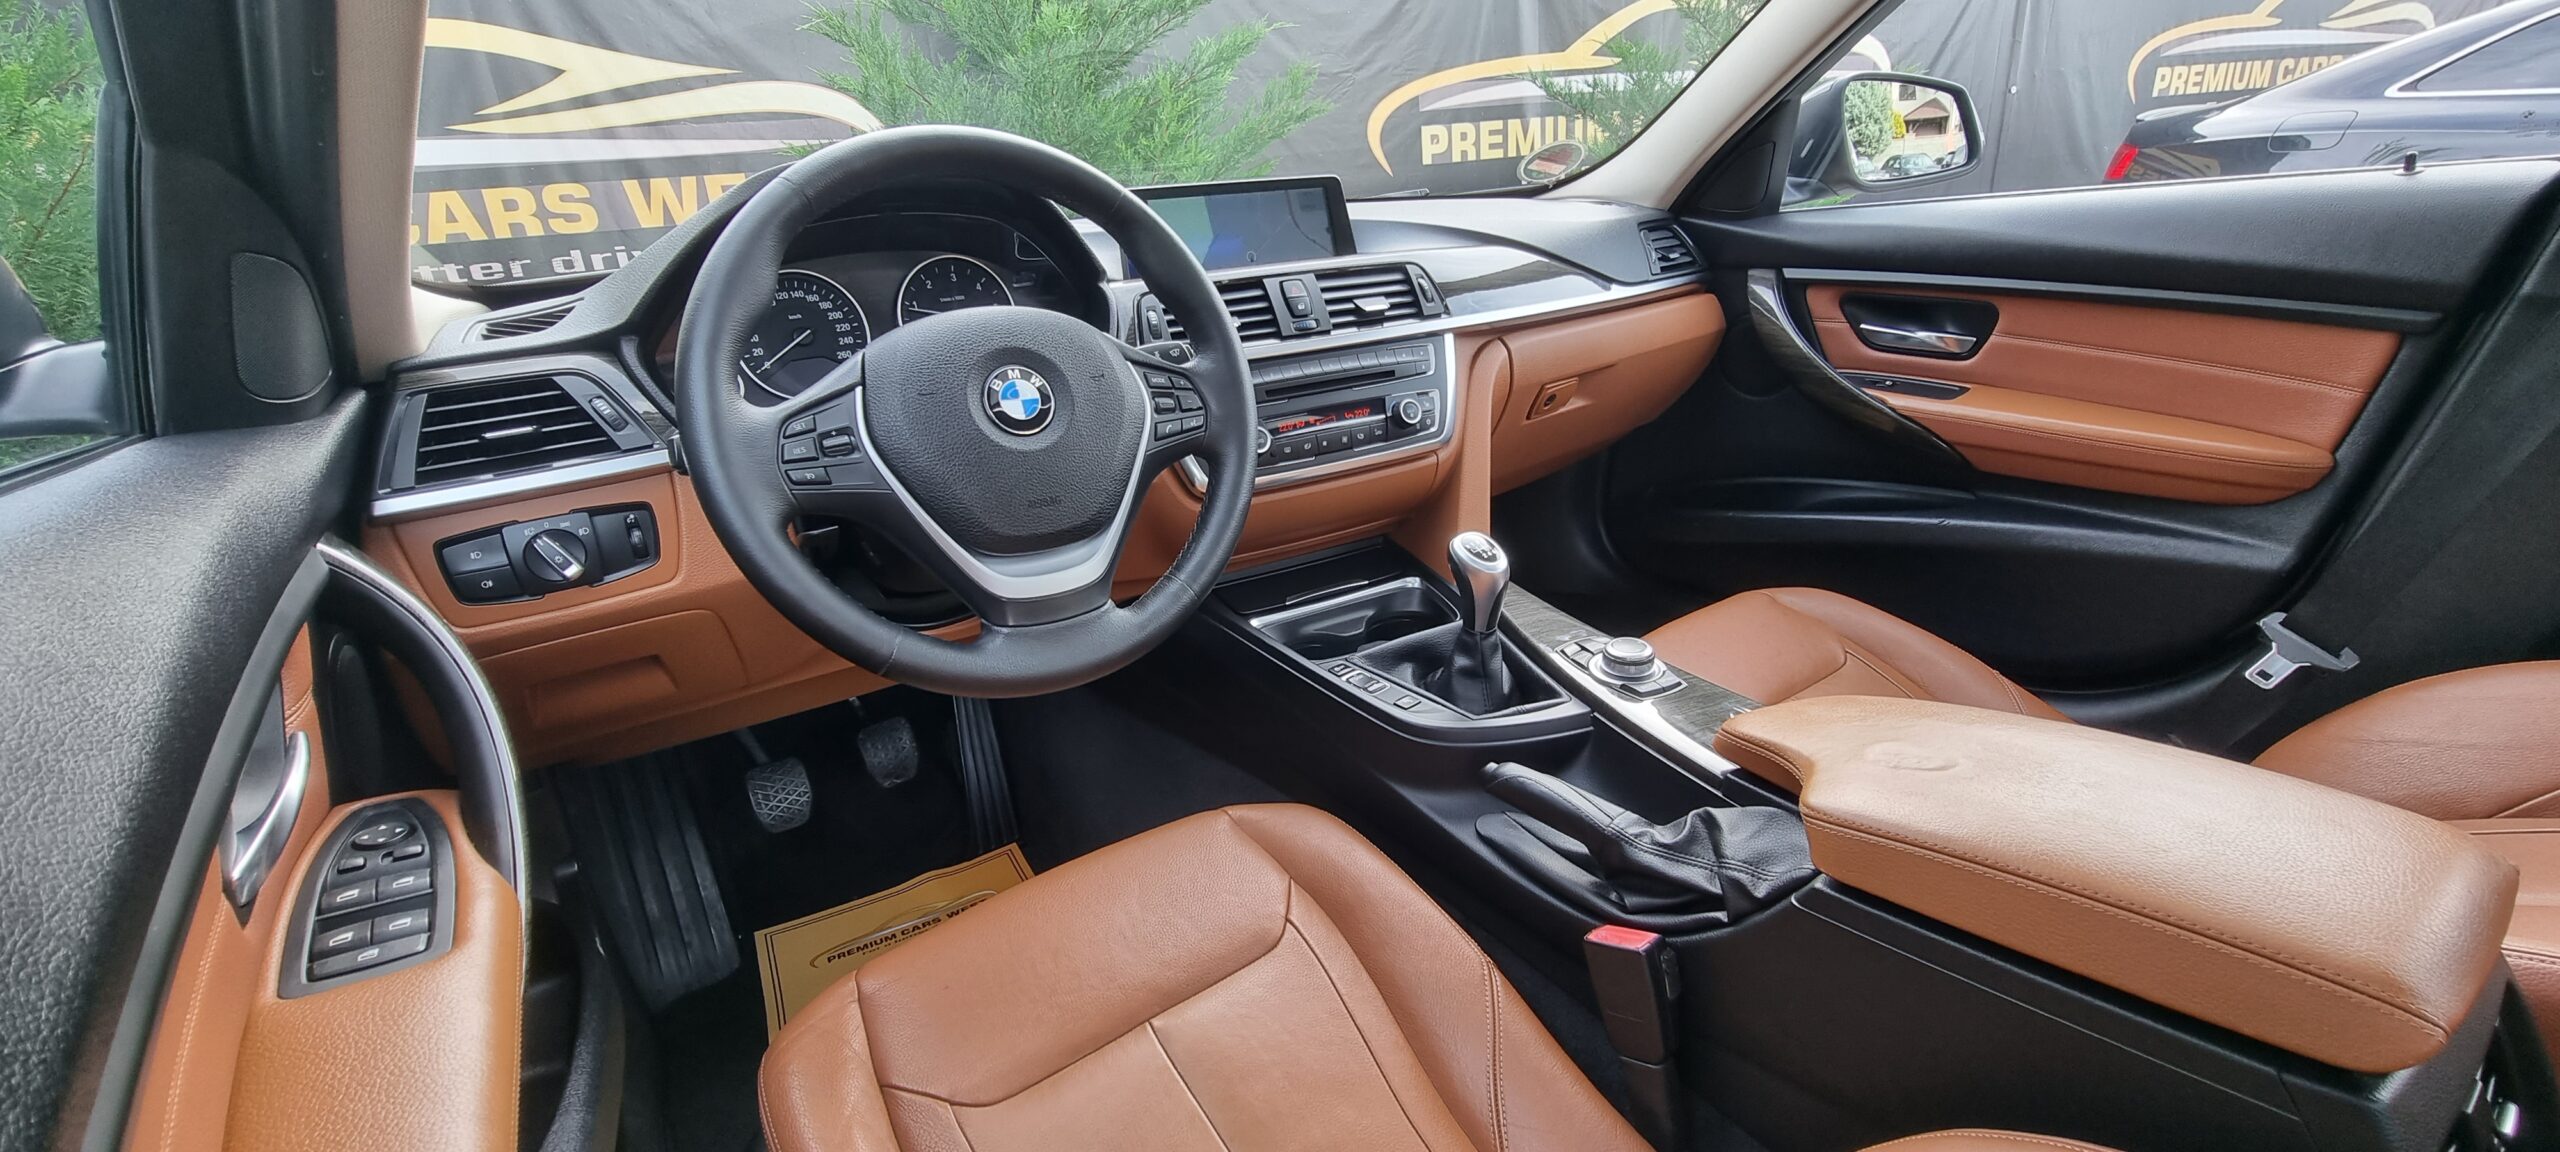 BMW F 30 LUXURY, 2.0 DIESEL, 184 CP, EURO 5, AN 2012